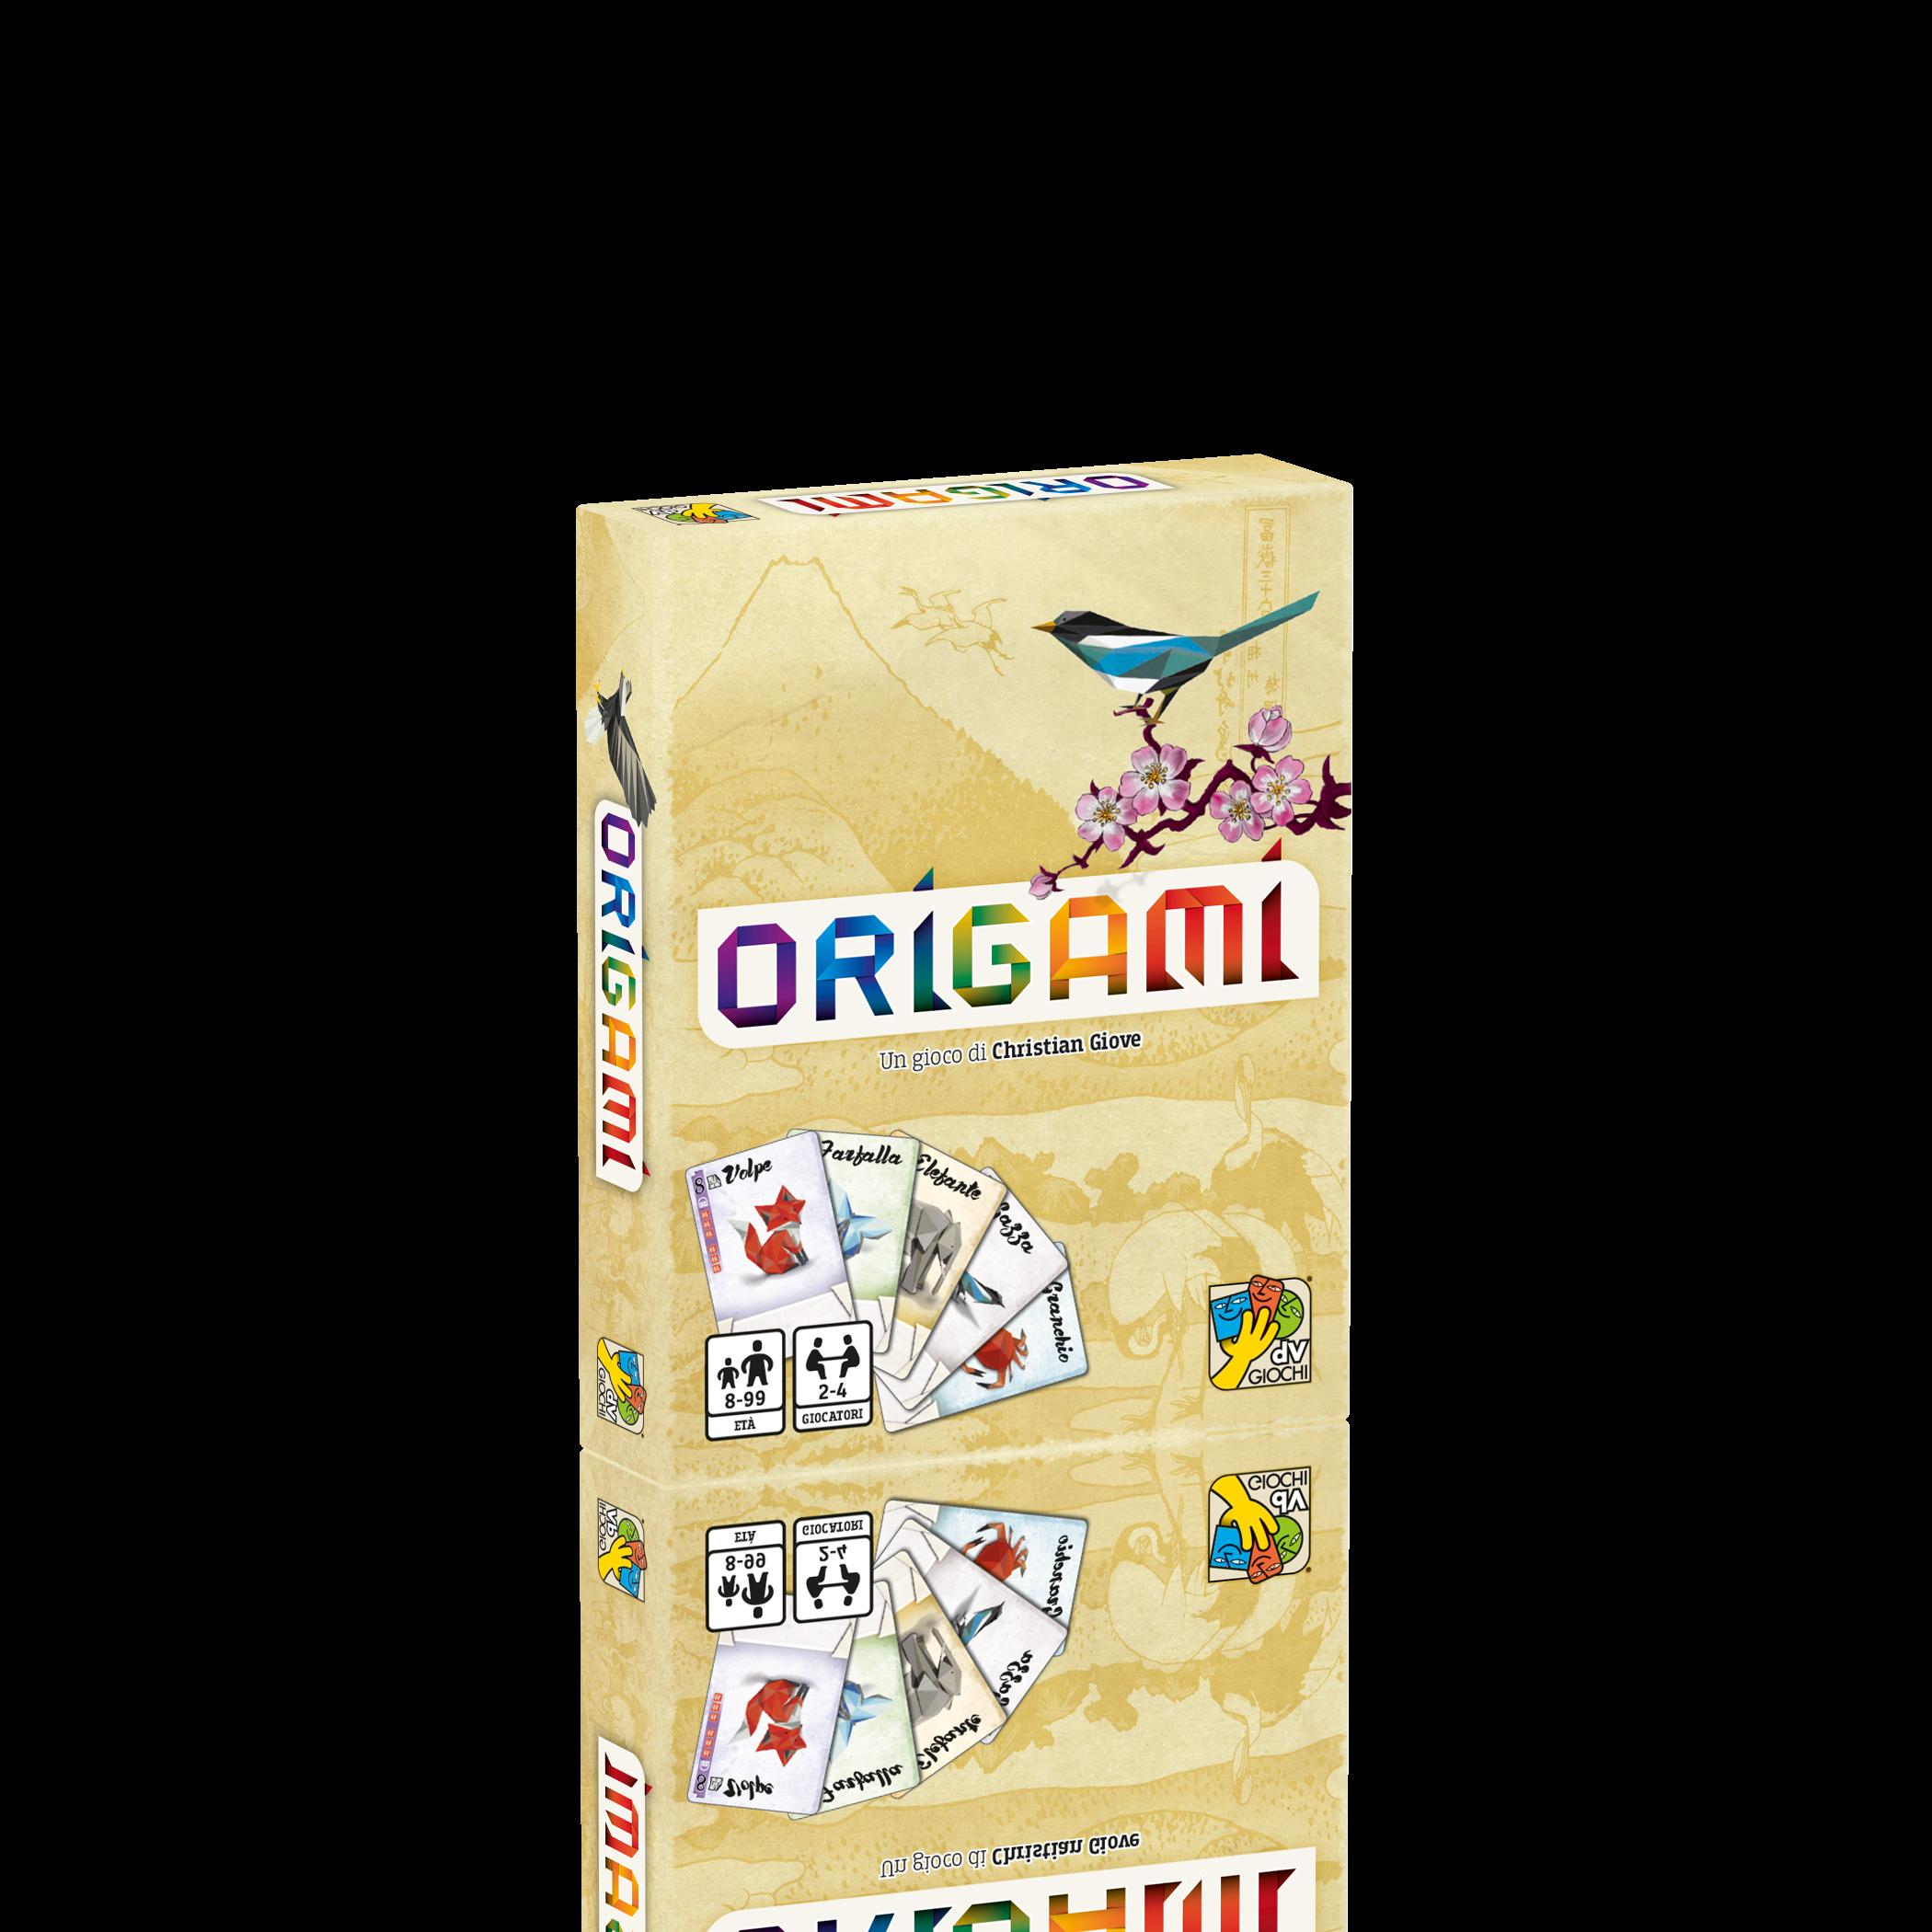 Origami Da Vinci Giochi - toysvaldichiana.it